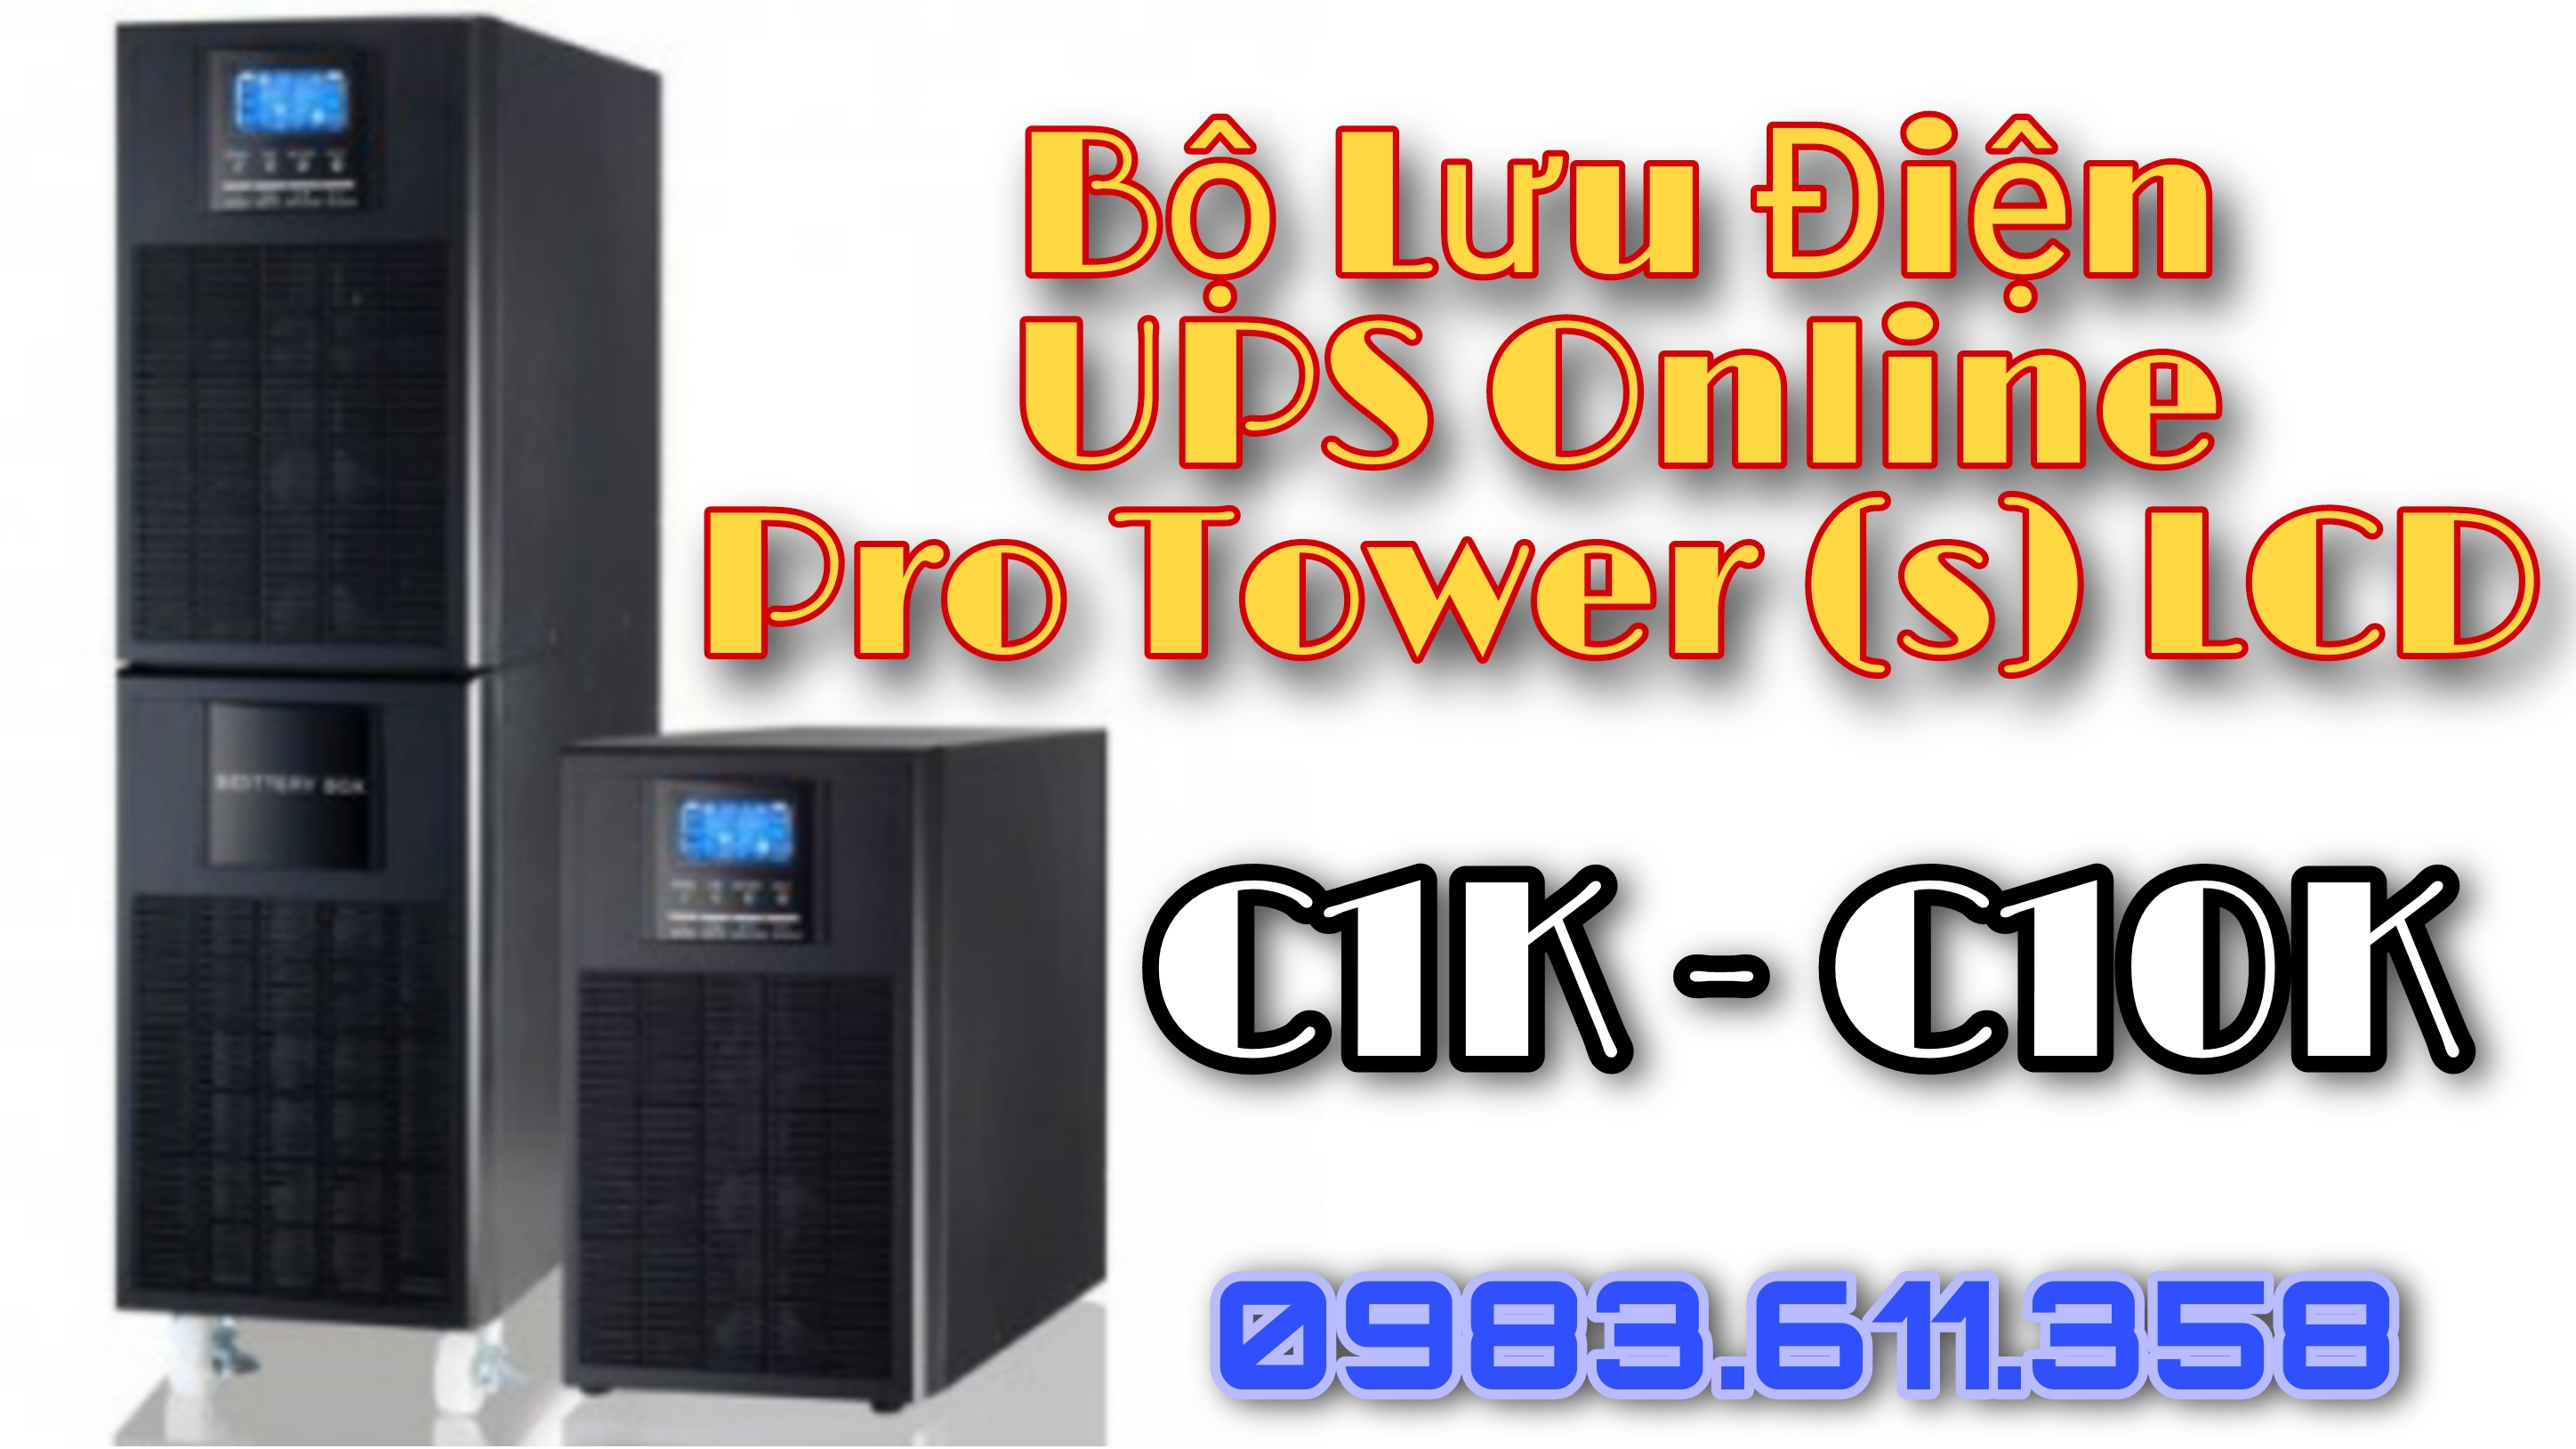 Bộ lưu điện UPS Online Pro LCD Tower: Pro + C1K - C2K - C3K - C6K - C10K (s) LCD | Điện tử ETS